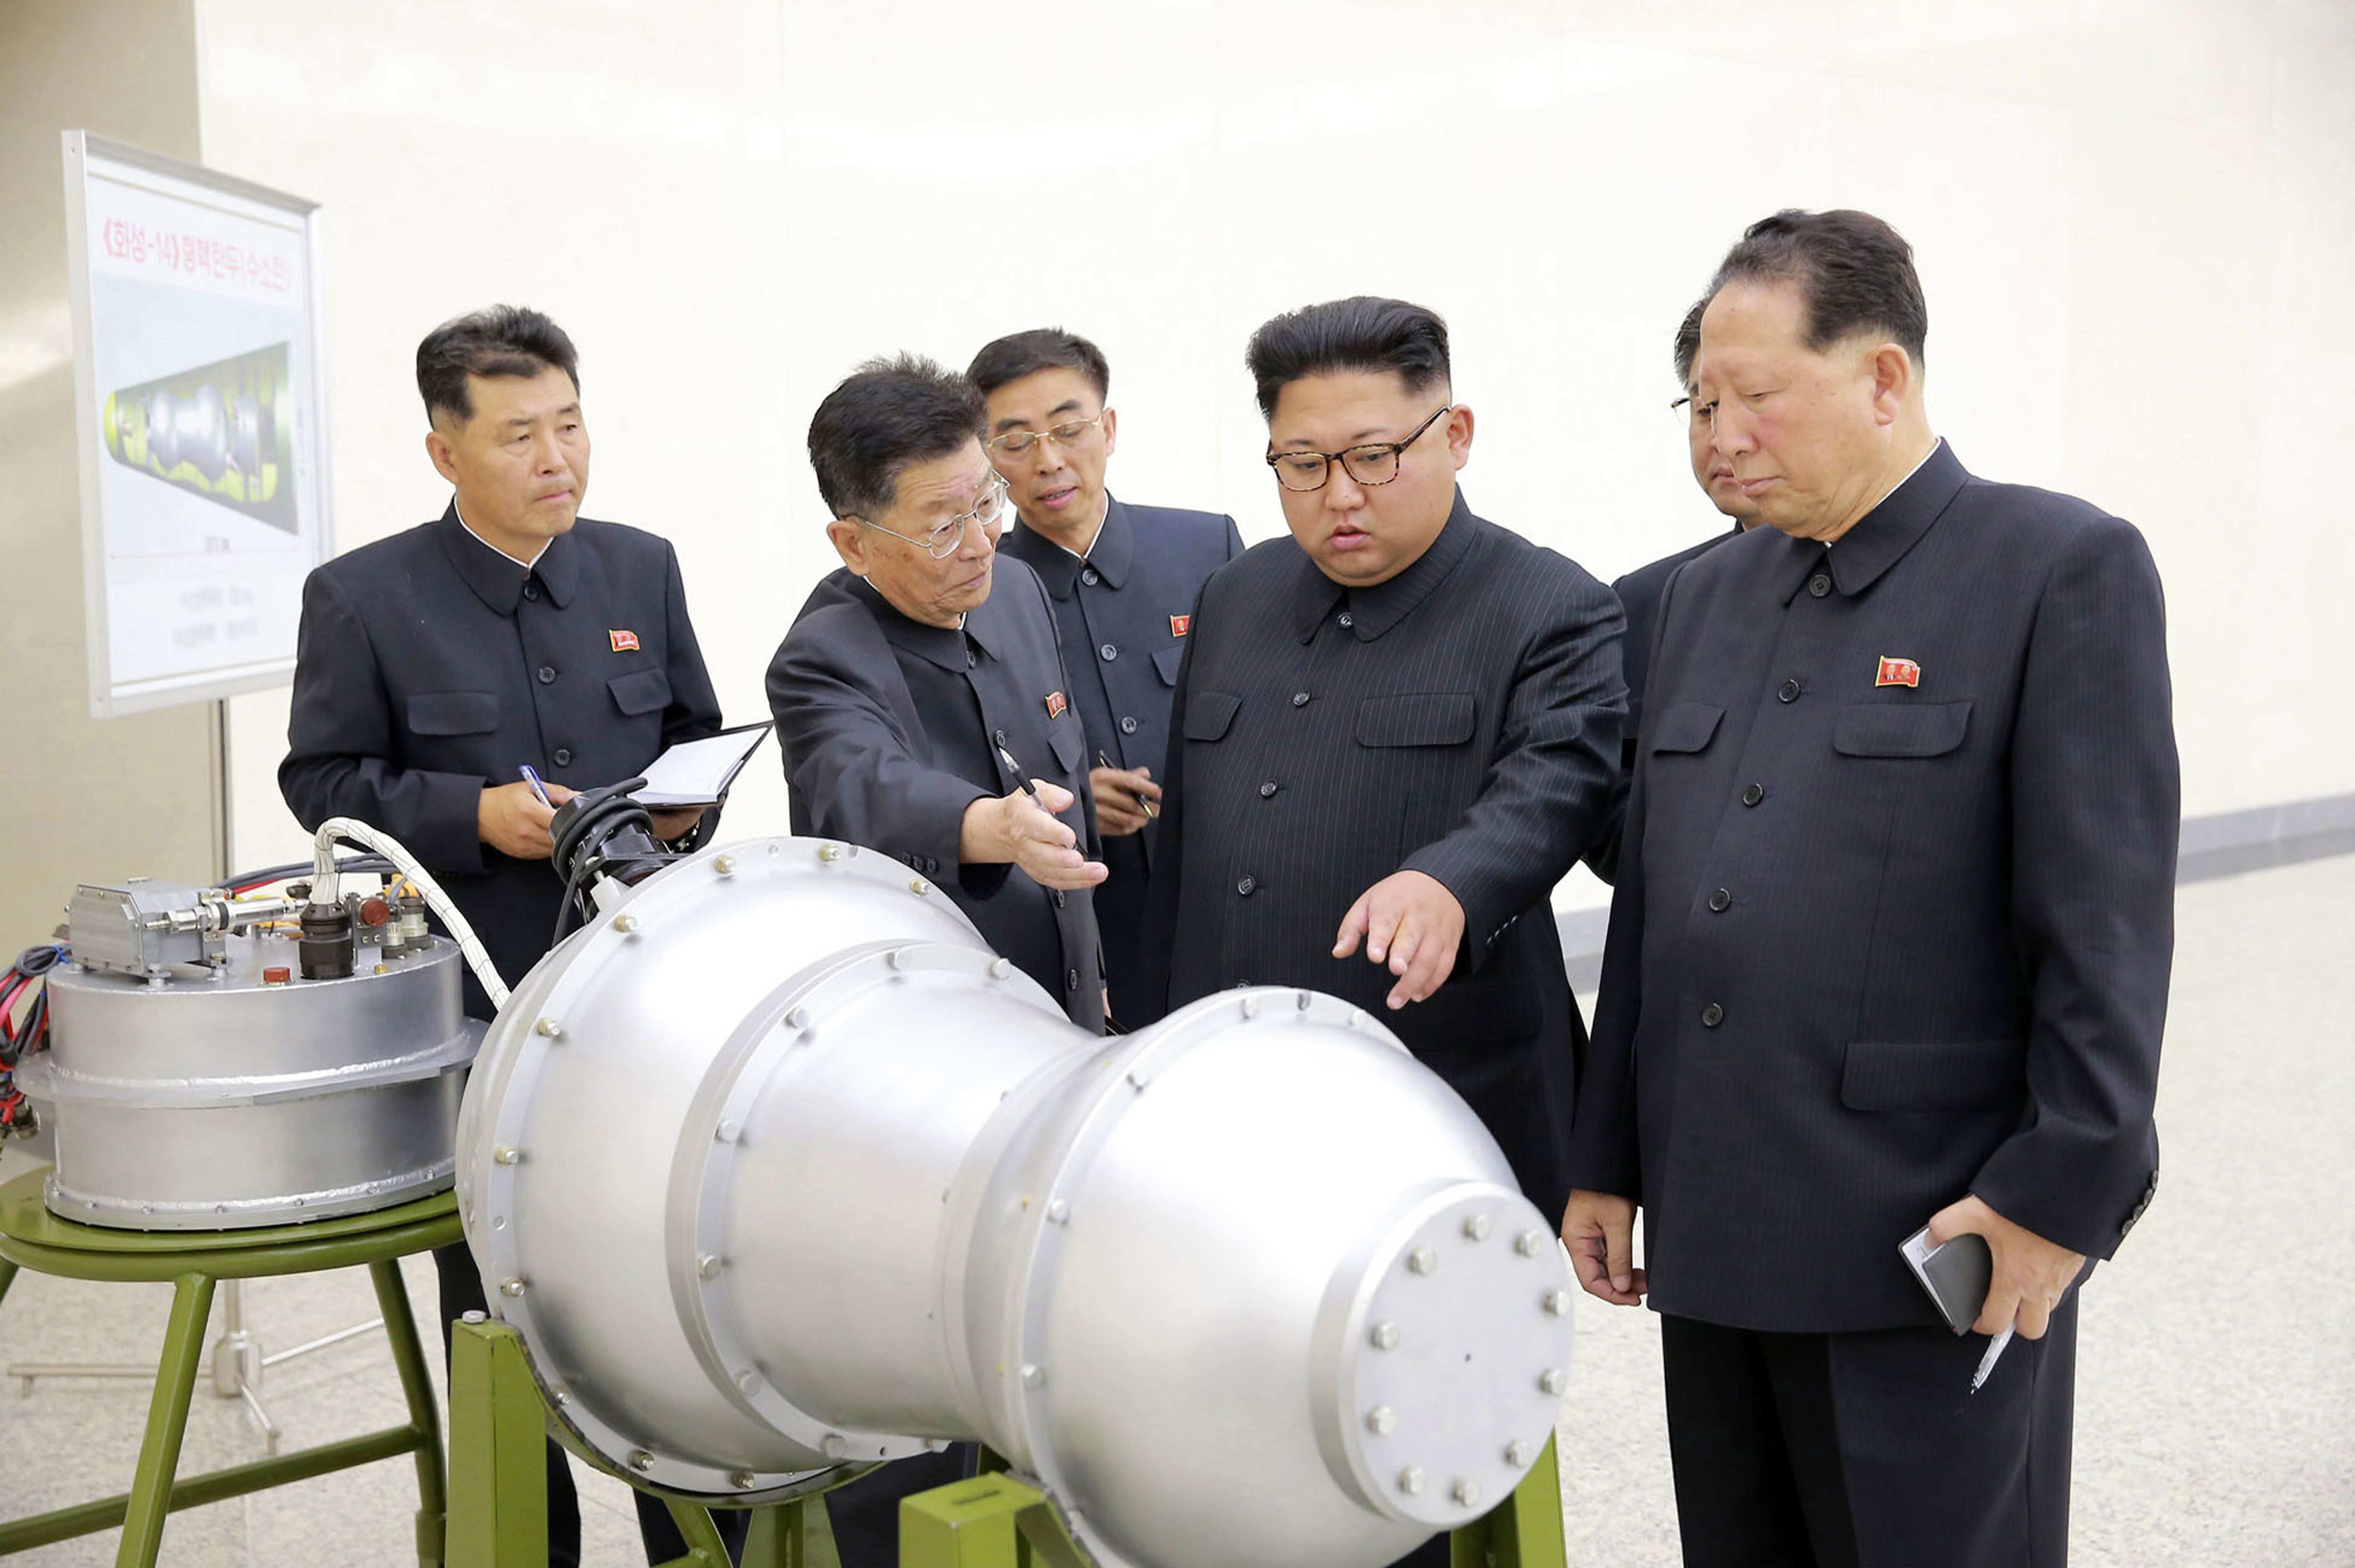  کیم جونگ‌اون از بمب هیدروژنی دیدن کرده است